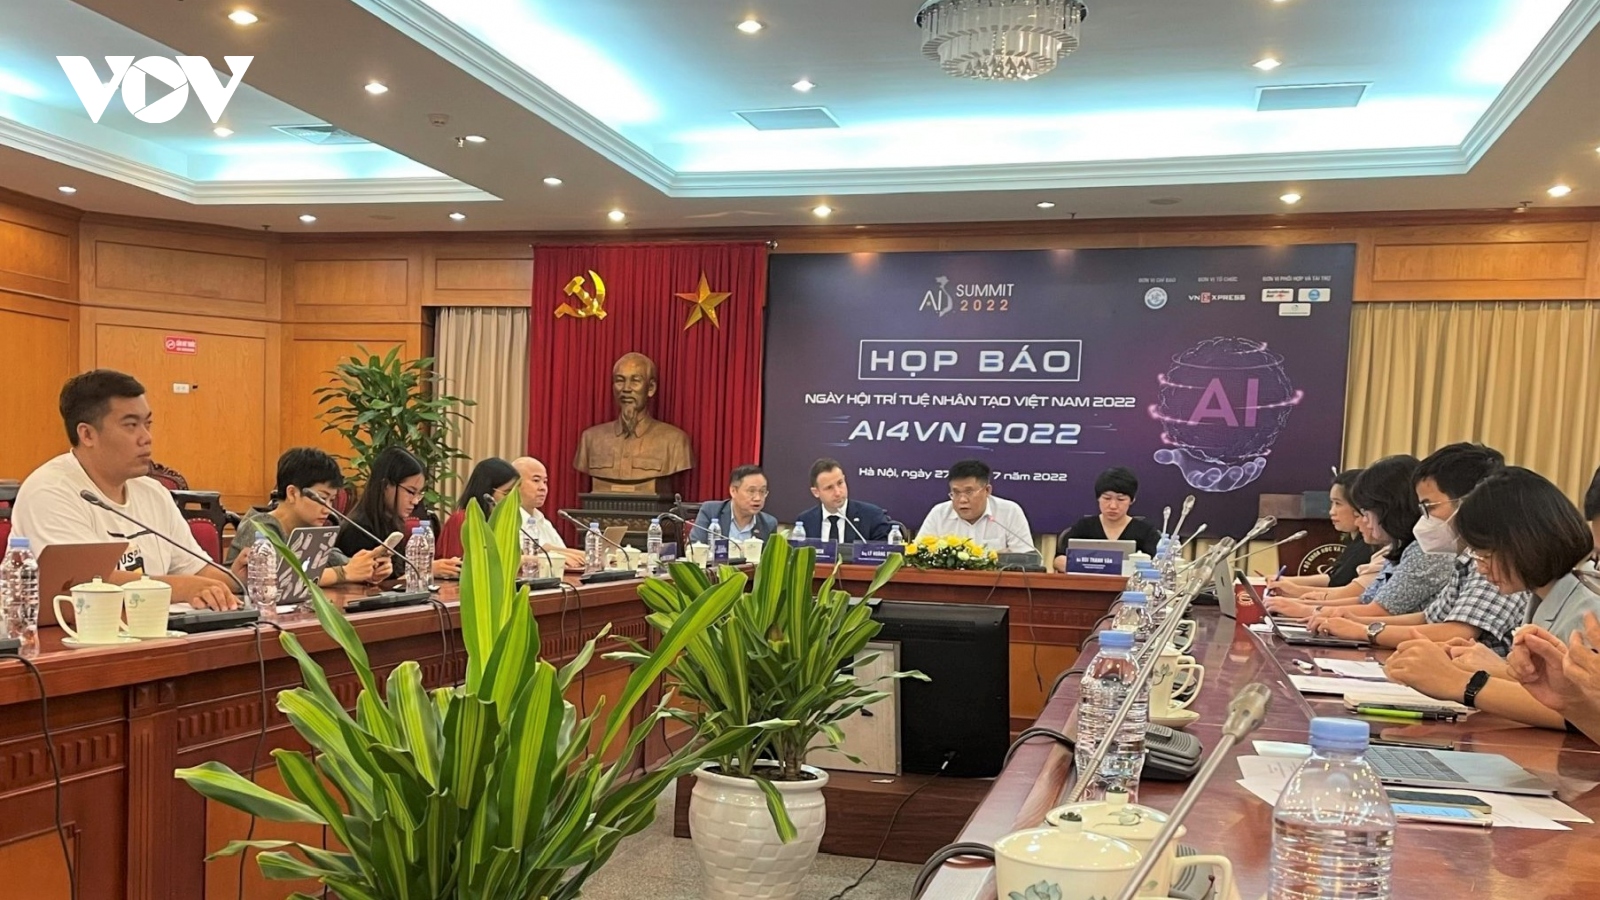 Ngày hội trí tuệ nhân tạo Việt Nam 2022 diễn ra tại Hà Nội vào tháng 9 tới